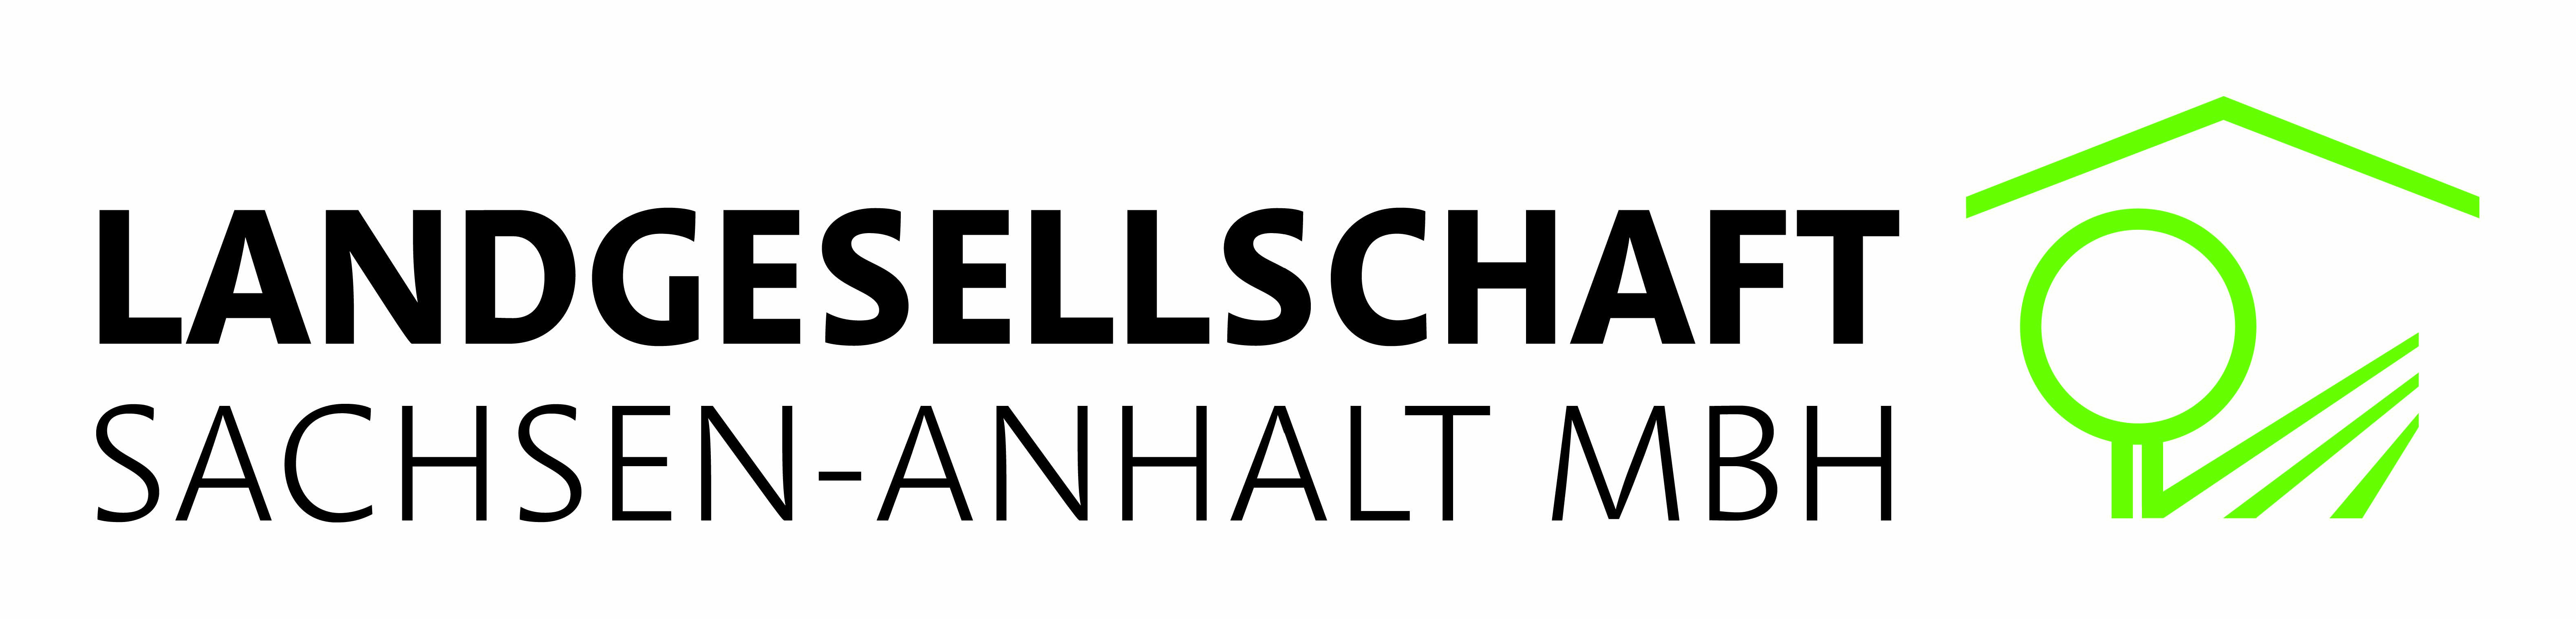 Landgesellschaft Sachsen-Anhalt mbH